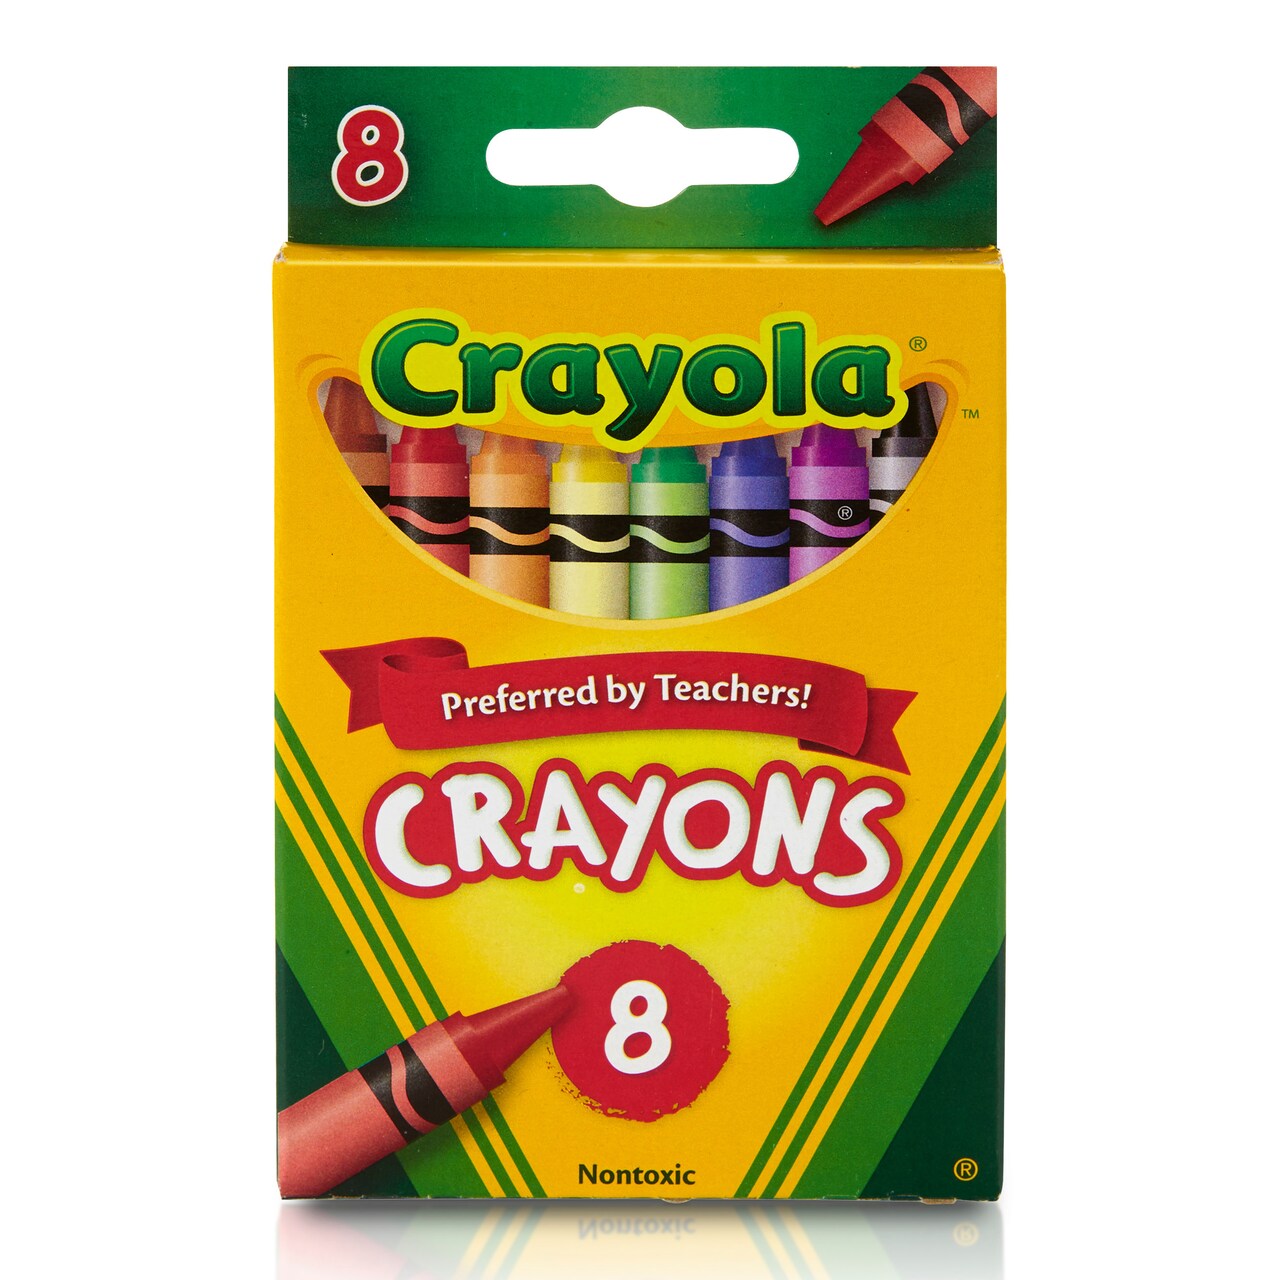 Crayola Crayon Set, 8-Colors